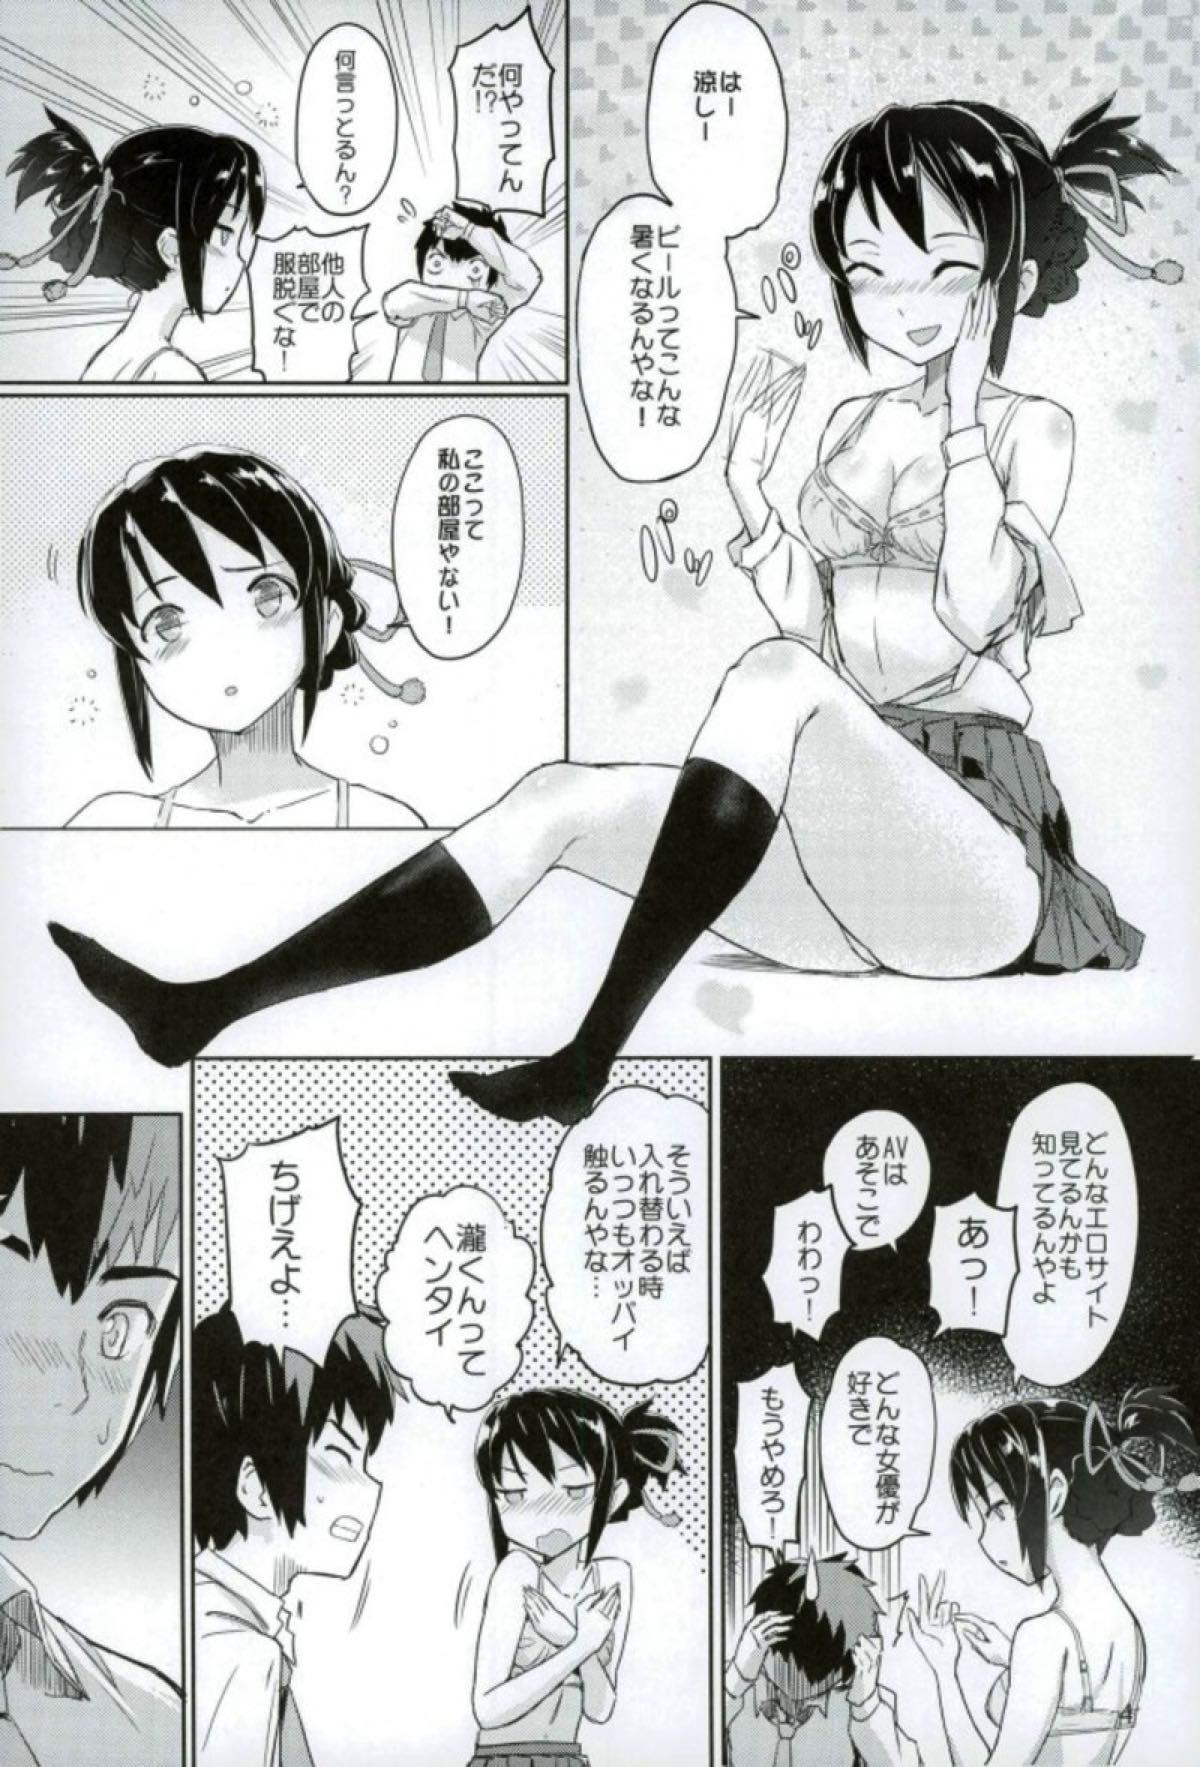 Exibicionismo Kimi to Boku no Musubi - Kimi no na wa. Amador - Page 5